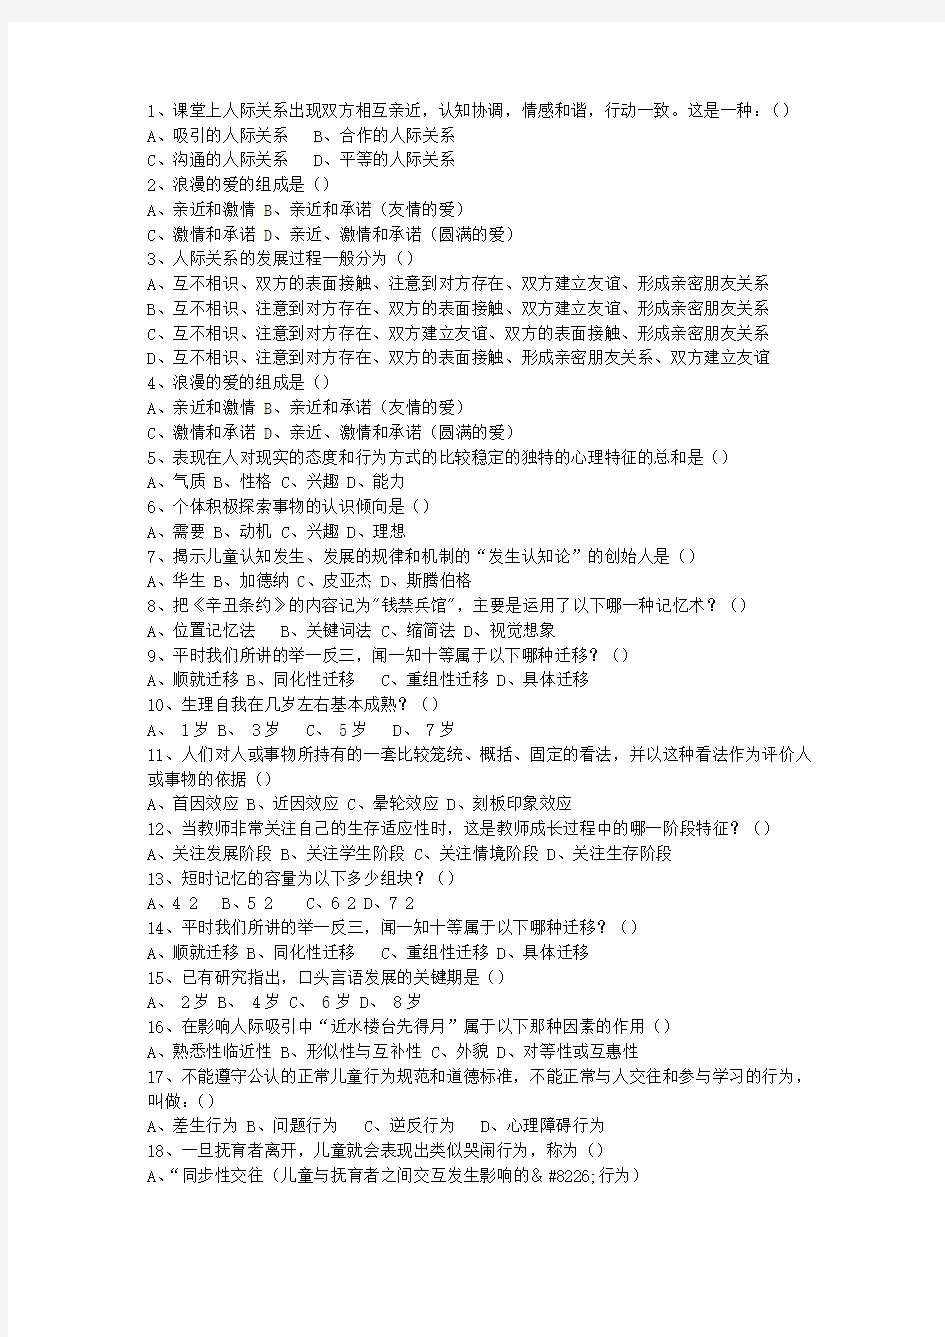 2015河北省教师资格证考试《综合素质》最新考试题库